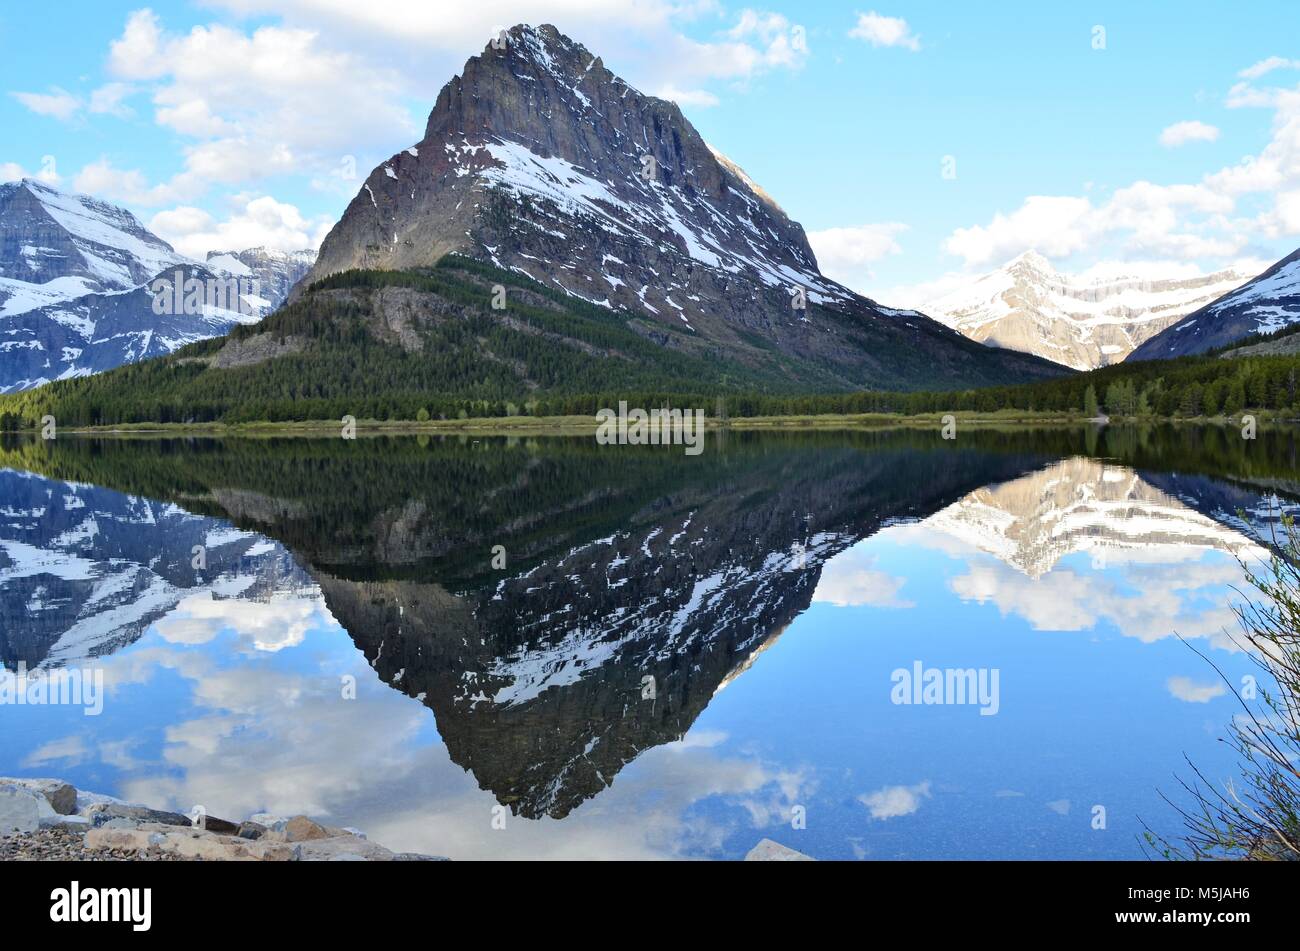 Les montagnes sont couvertes de neige en raison d'un lac paisible, calme nous donnant une vue spectaculaire Banque D'Images